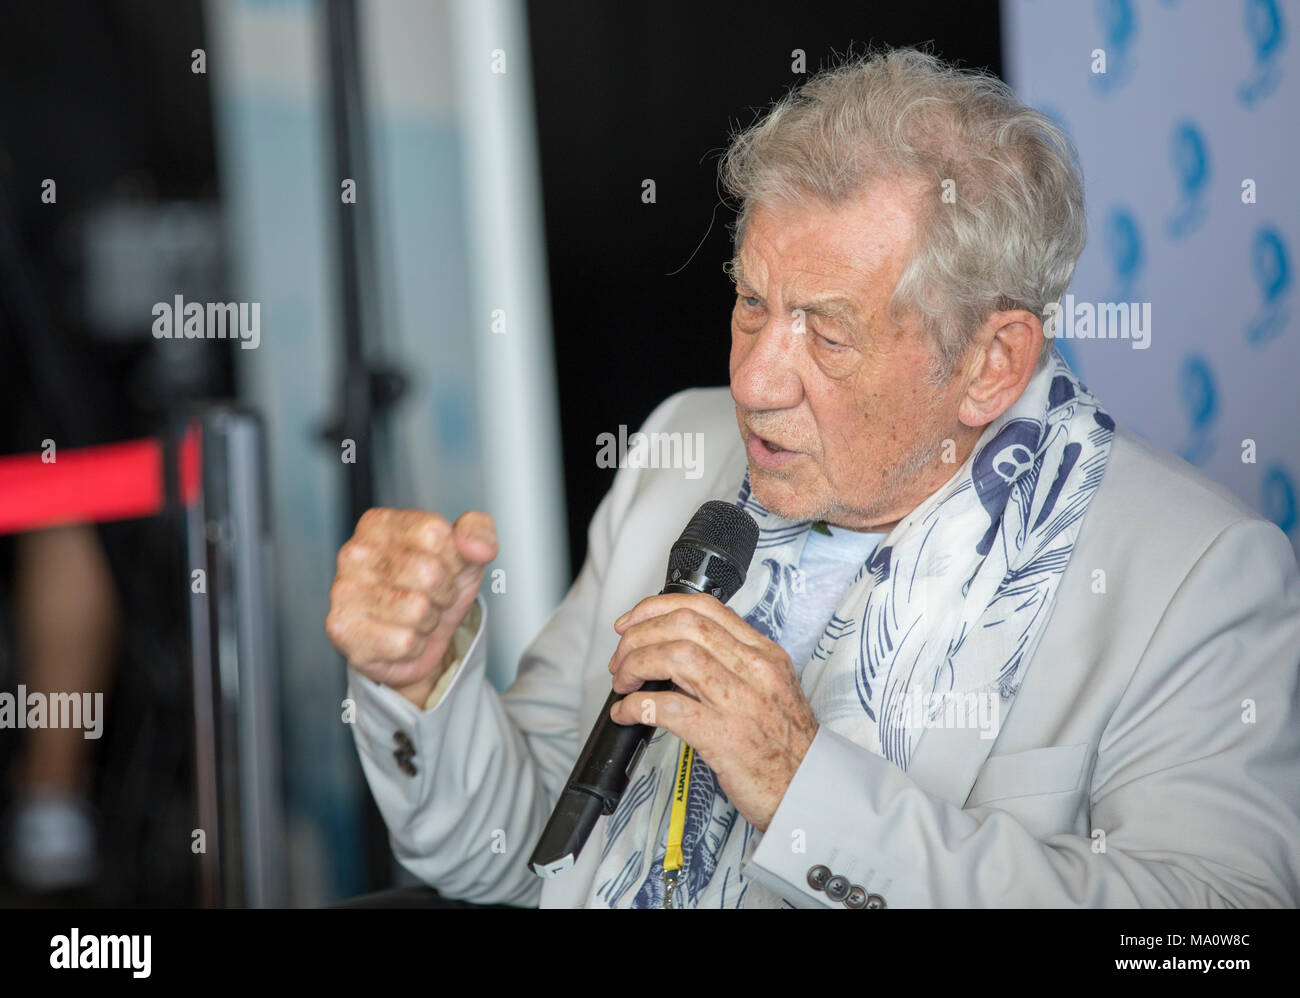 Sir Ian McKellen, englischer Schauspieler besucht die Cannes Lions Festival, Cannes, Frankreich, 21. Juni 2017 © ifnm Stockfoto